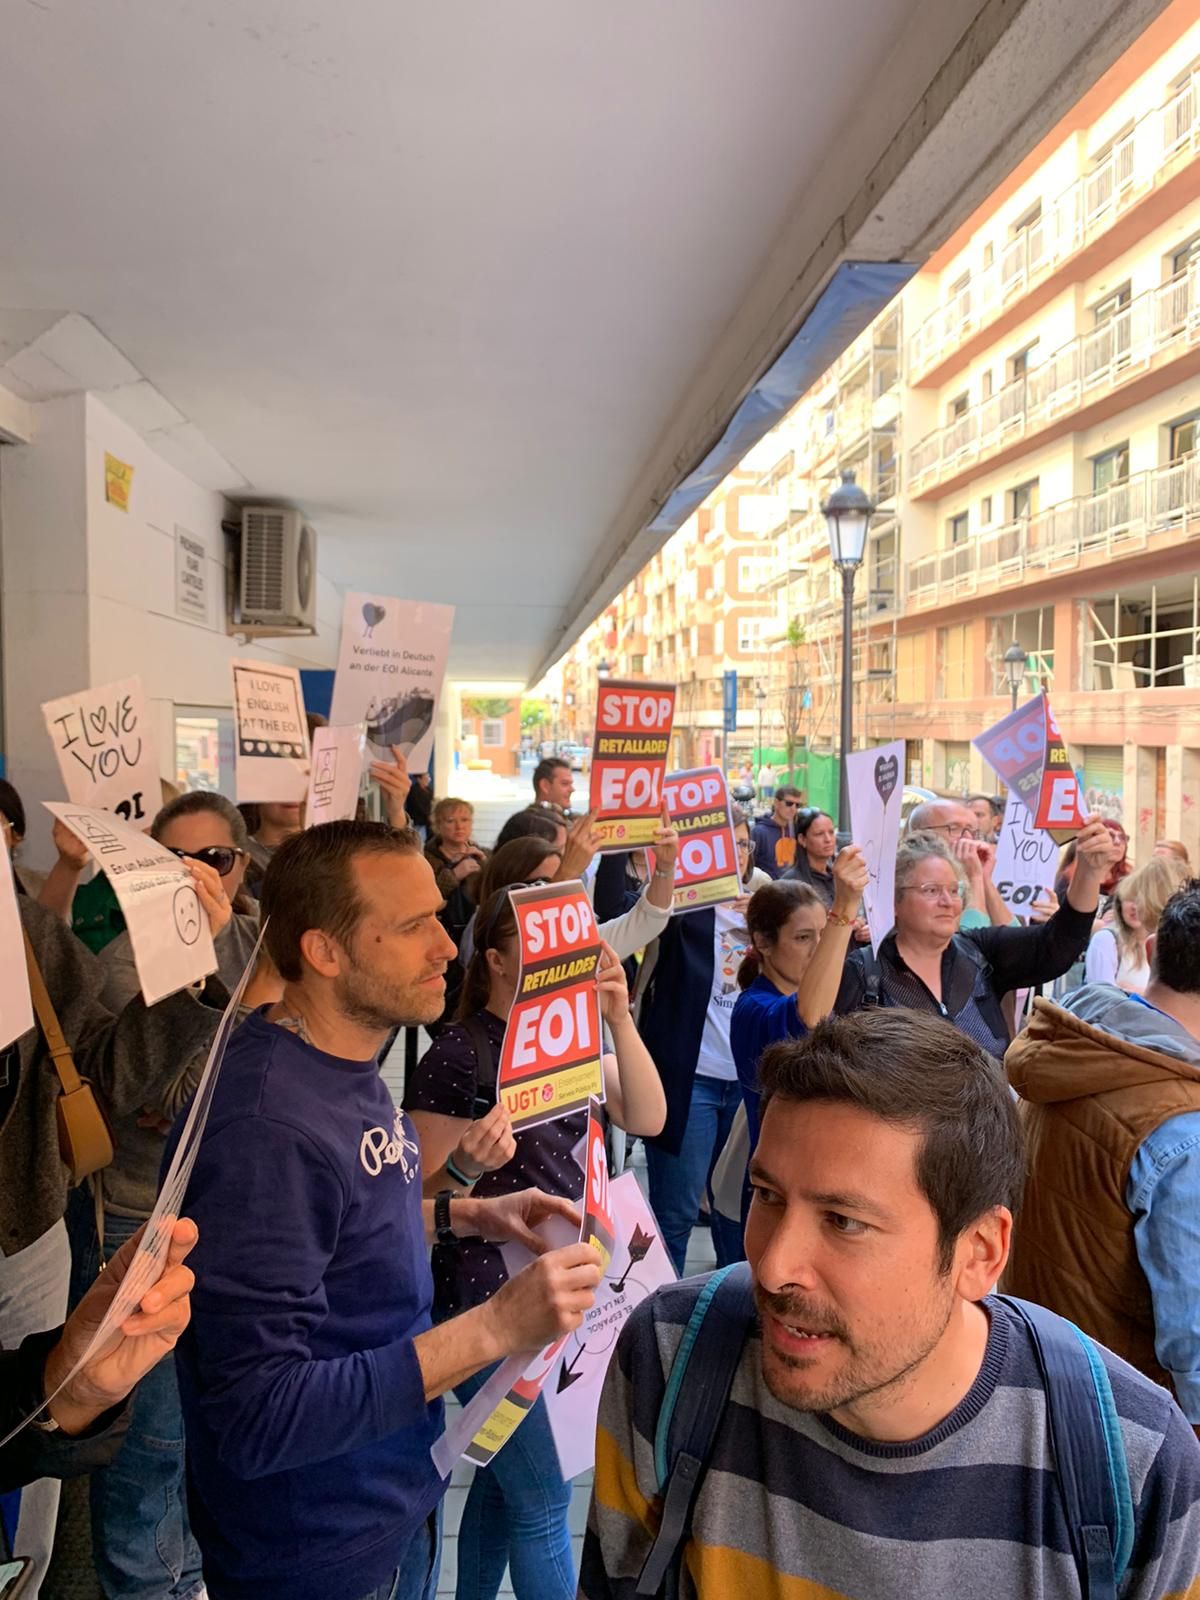 La Escuela de Idiomas de Alicante protesta por los recortes de clases presenciales el próximo curso